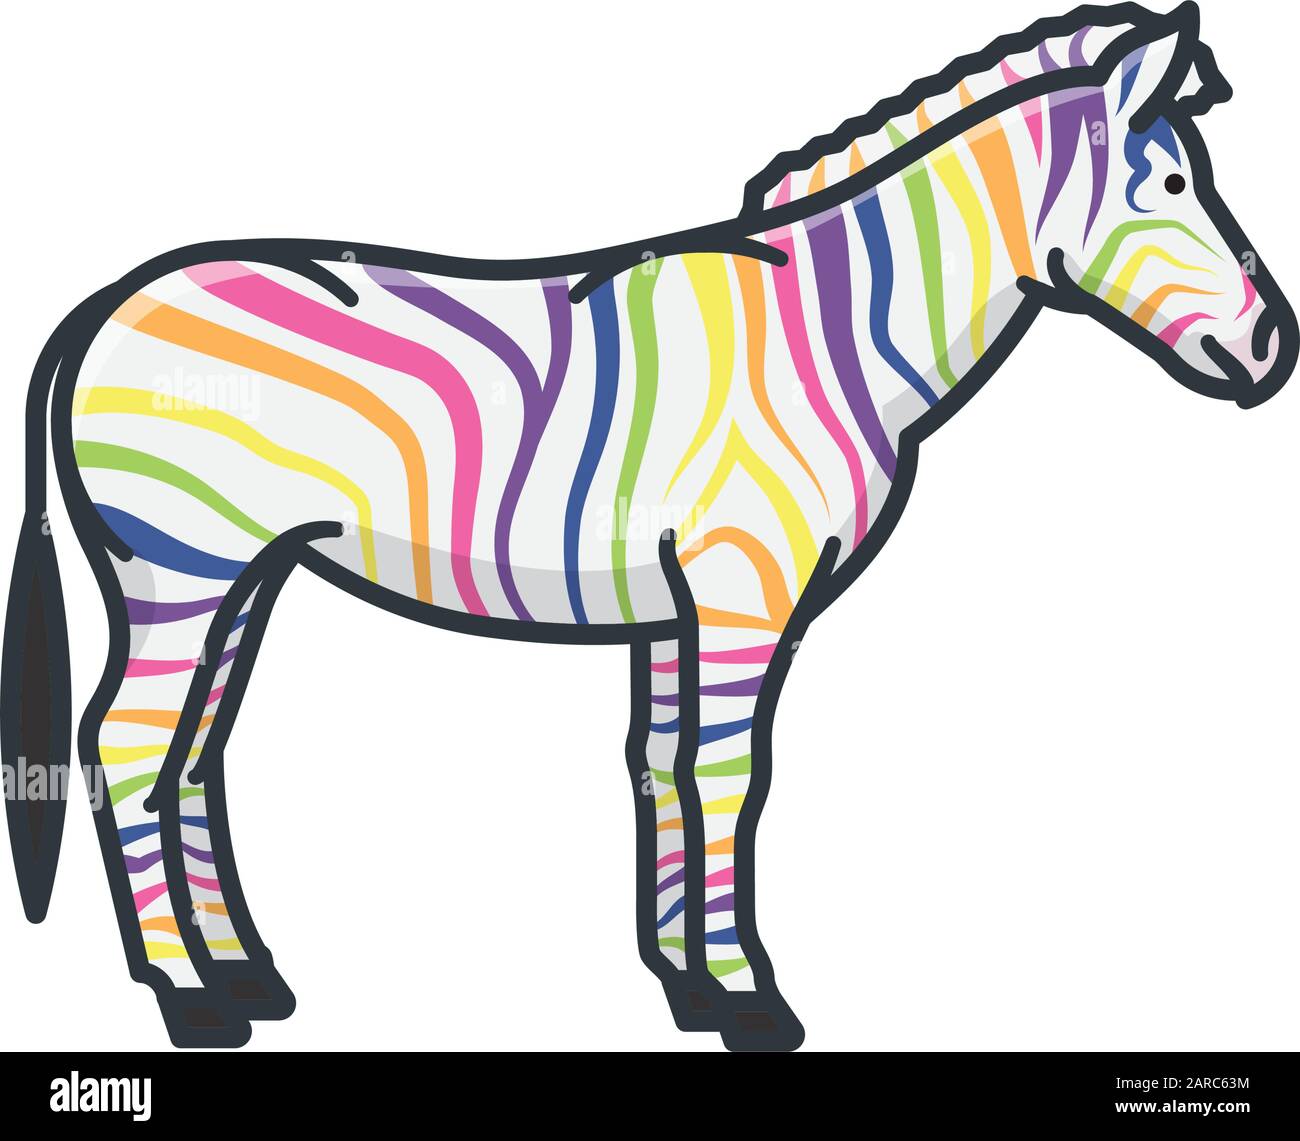 Immagine vettoriale isolata con zebra colorata in arcobaleno. Unicità e rarità simbolo di concetto. Illustrazione Vettoriale